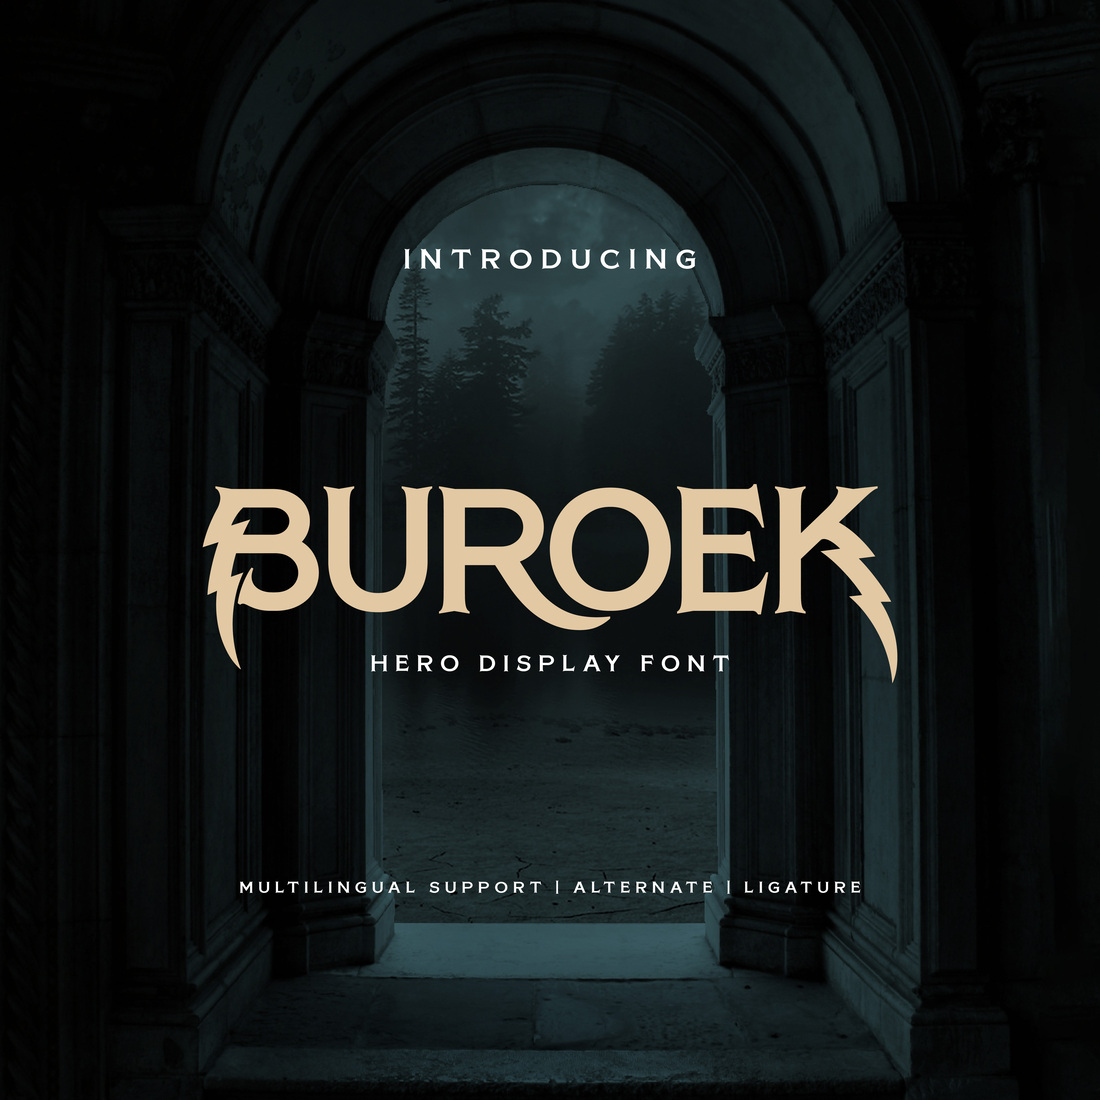 Buroek | Display Hero Font preview image.